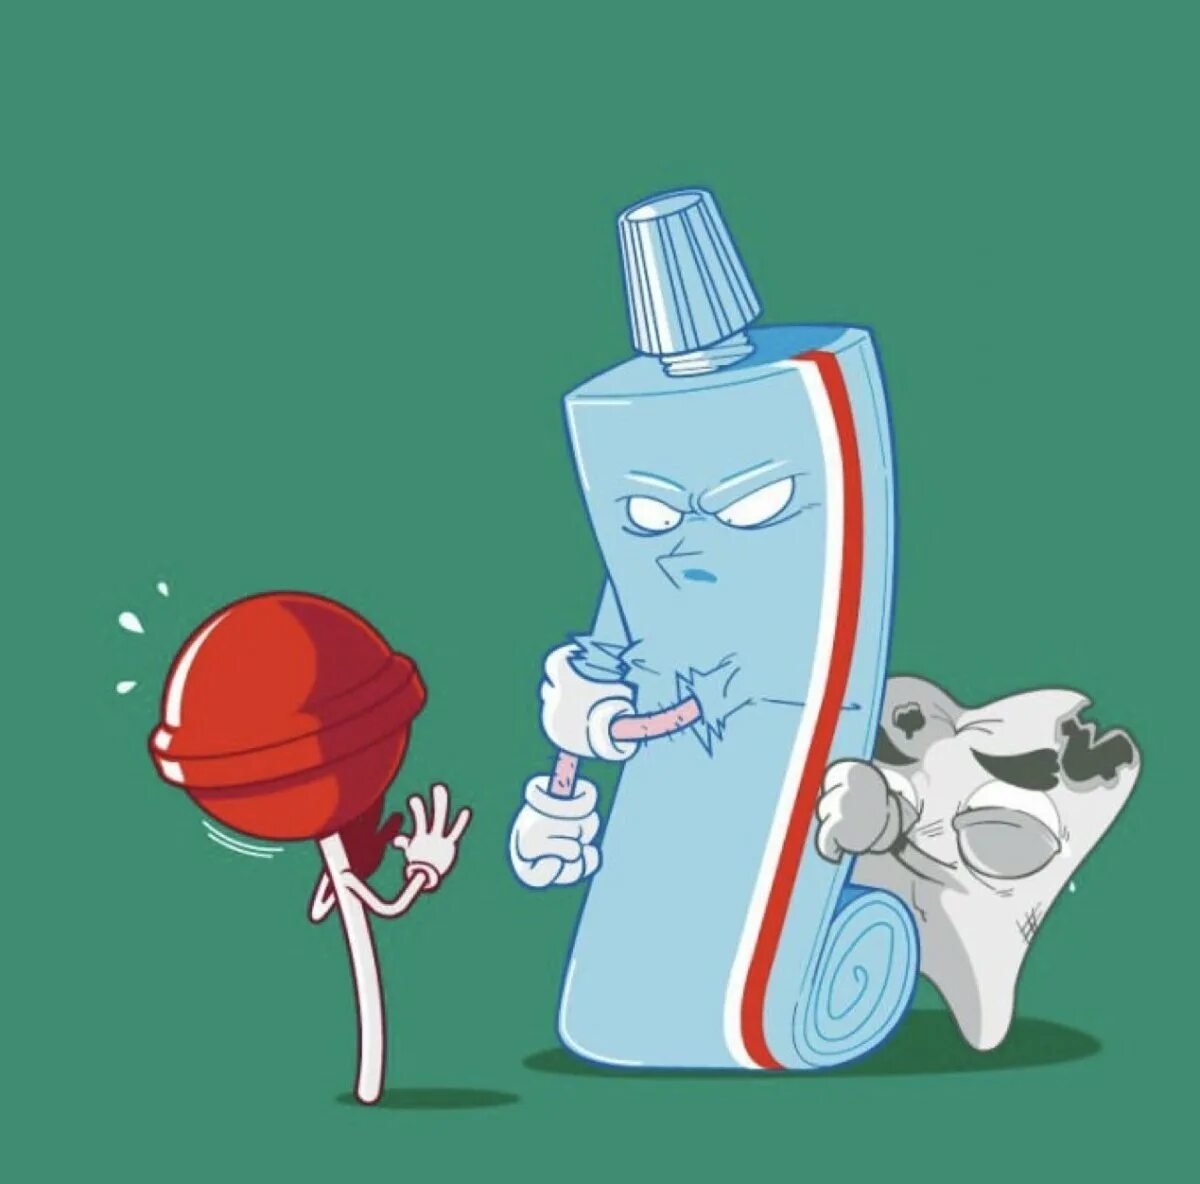 Рекламный плакат зубной пасты. Креативная реклама зубной пасты. Необычная реклама зубной пасты. Зубная паста юмор.